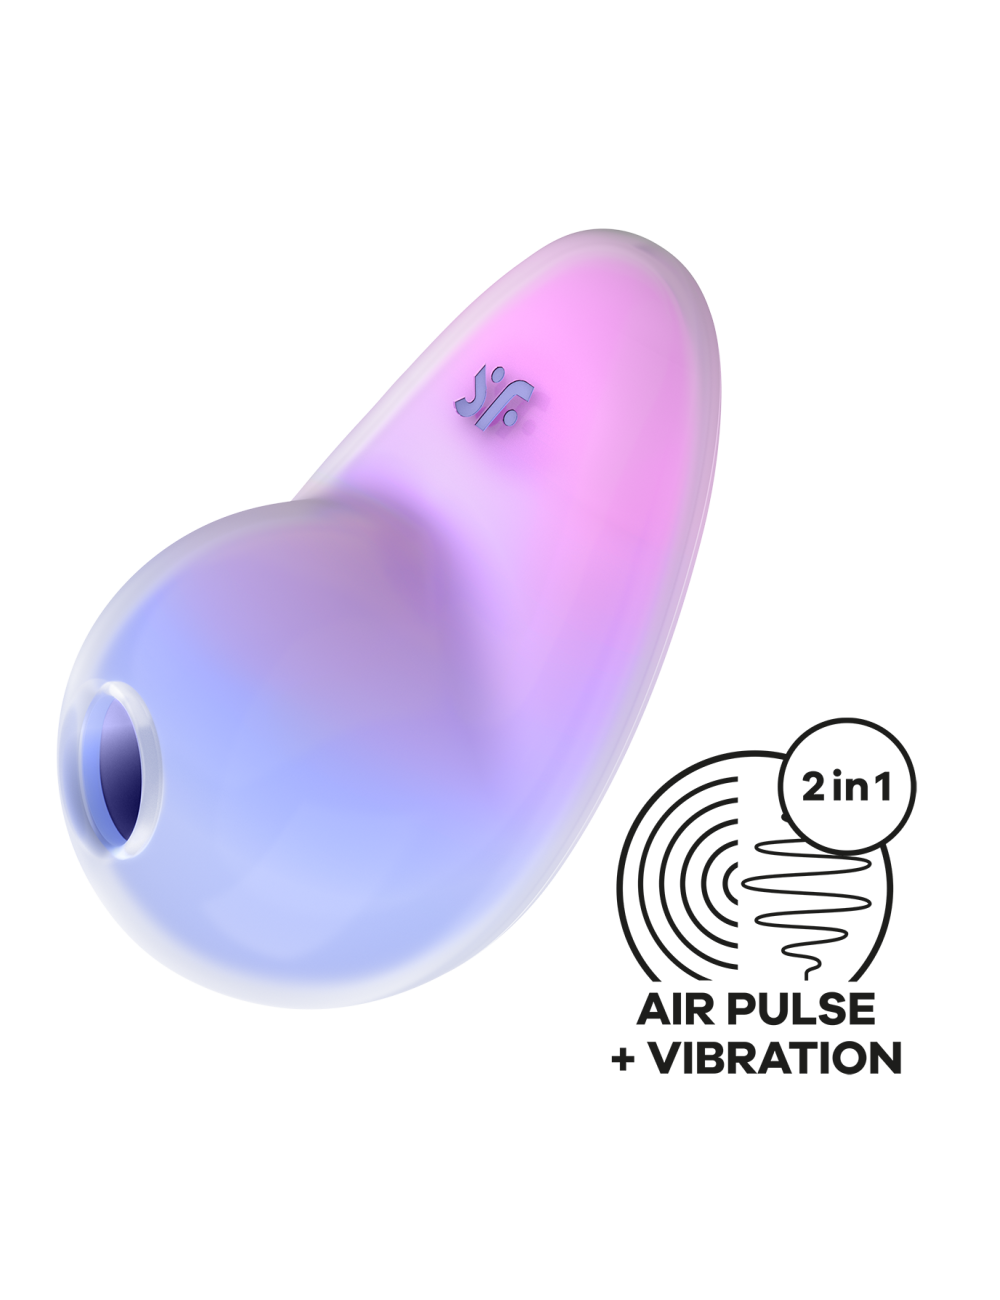 Pixie Dust vibromasseur à ondes de pression - Violet et rose